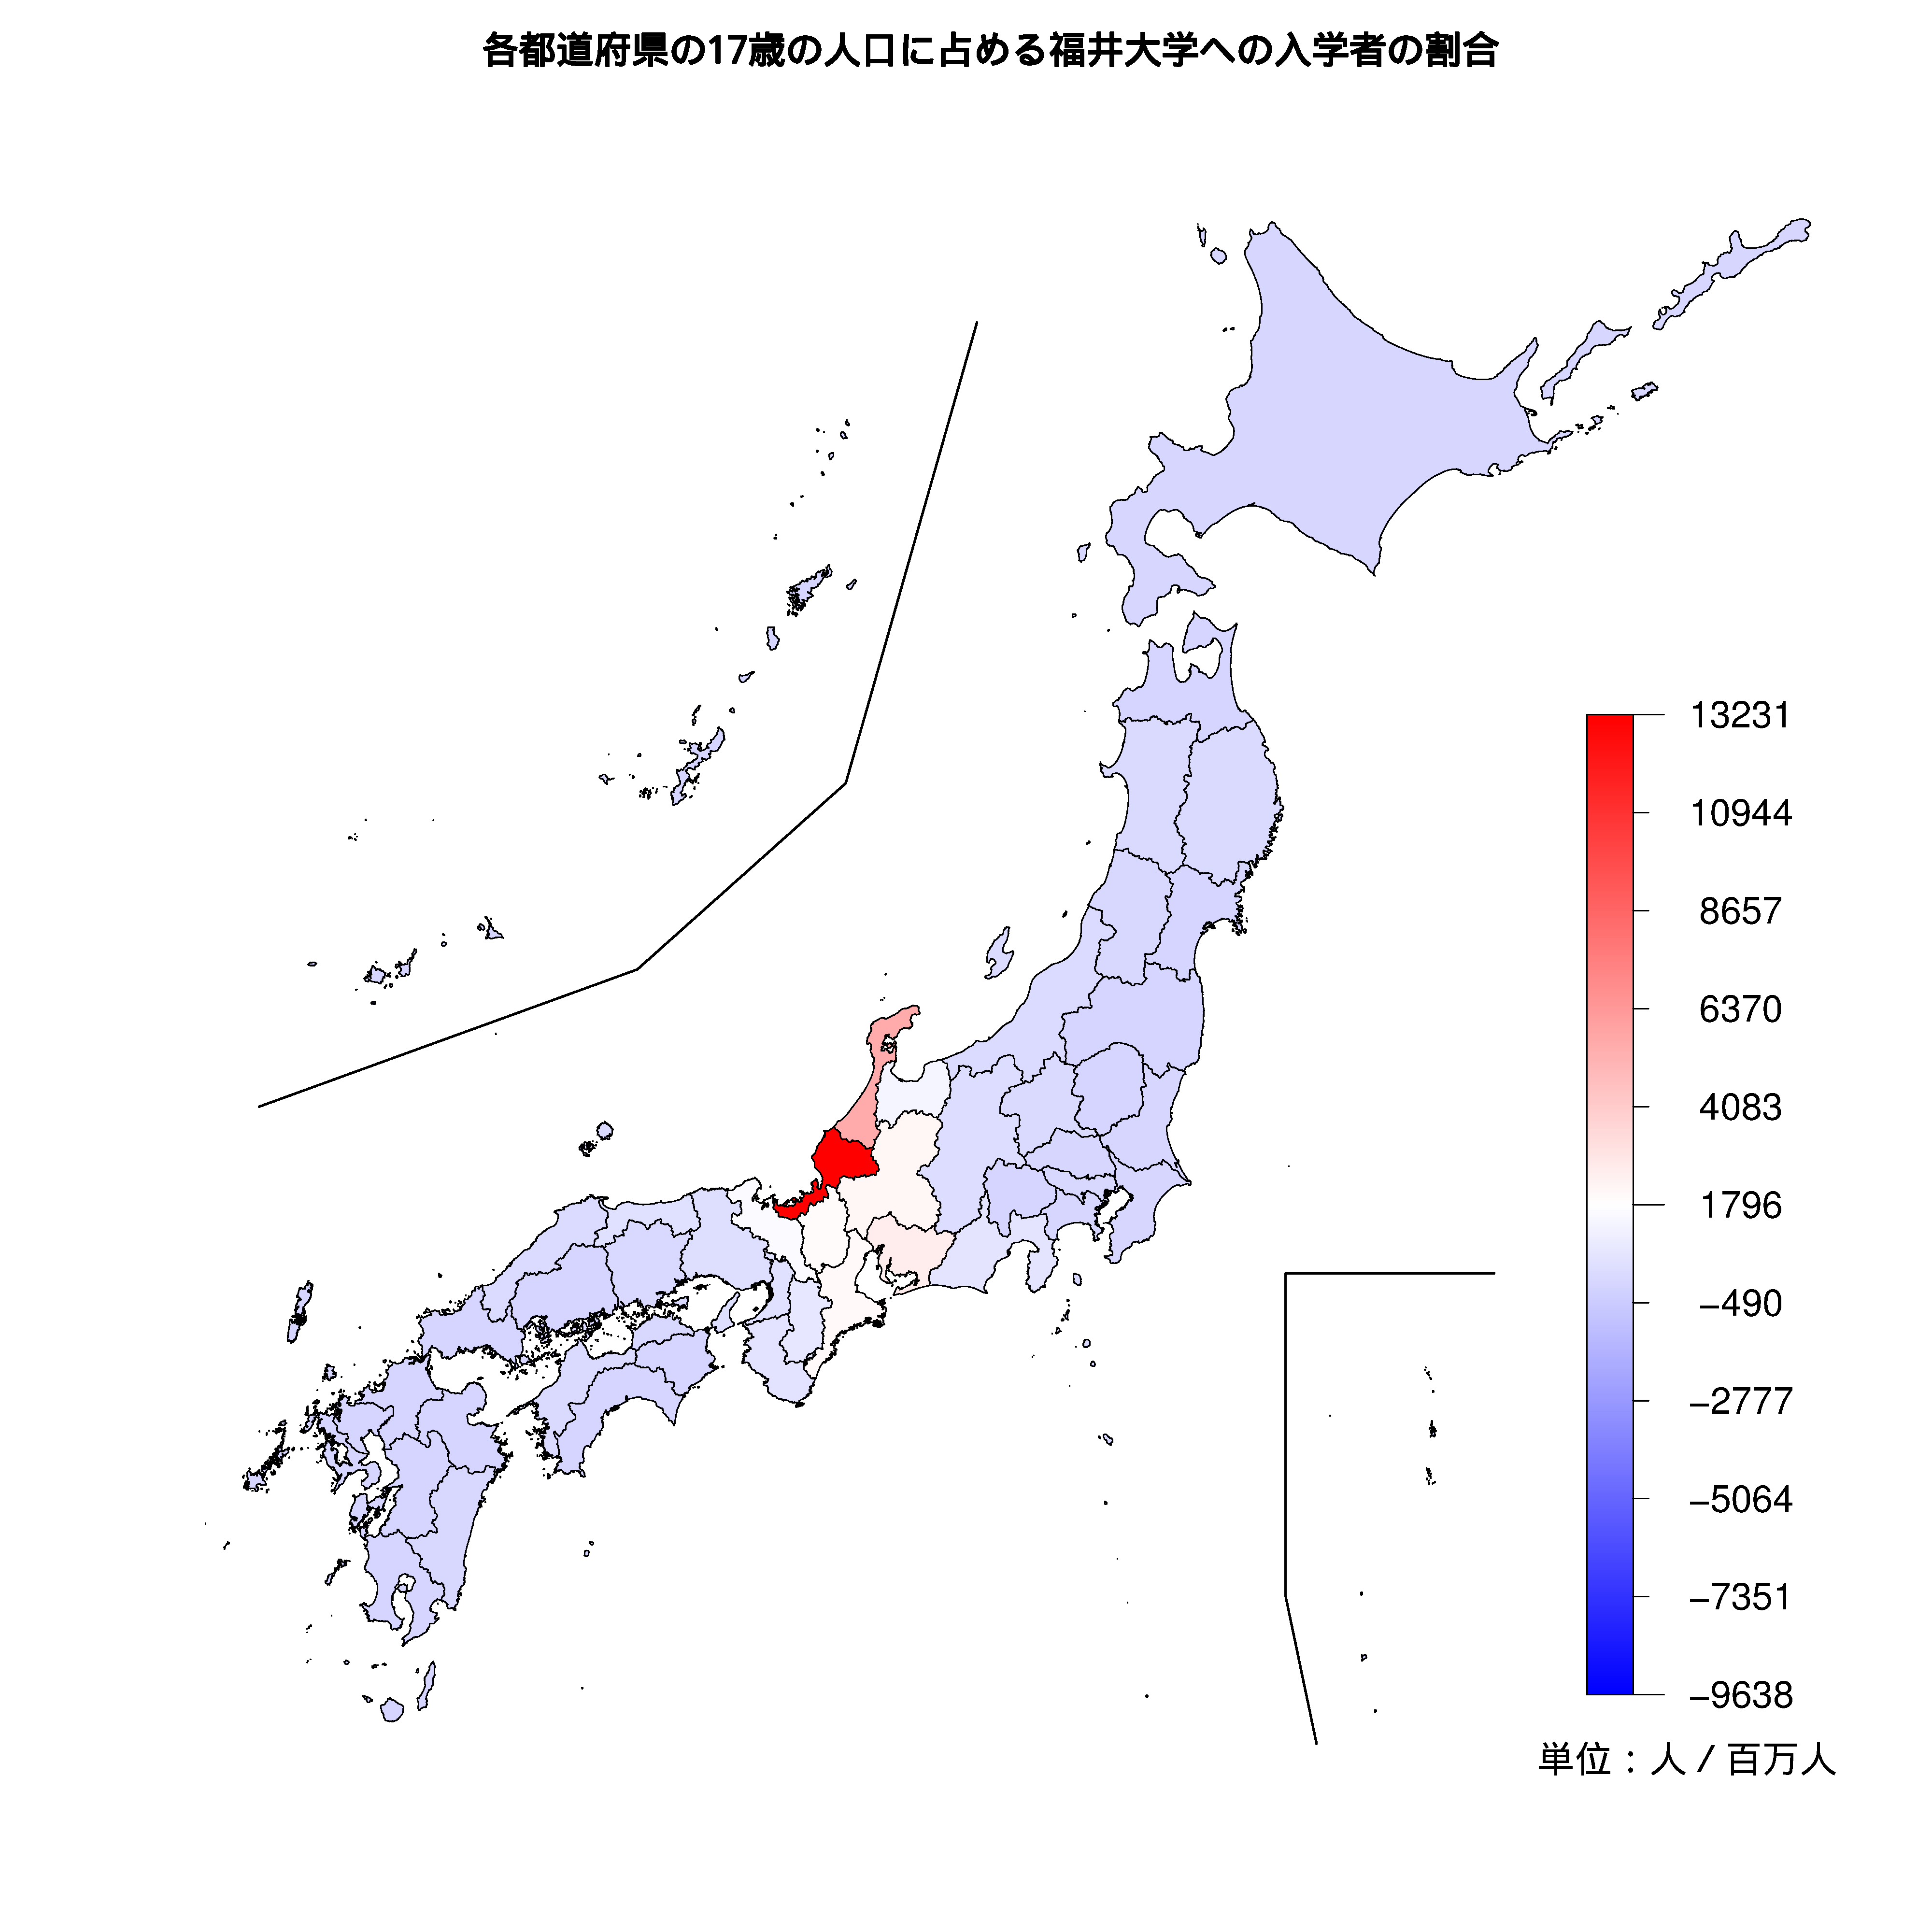 福井大学への入学者が多い都道府県の色分け地図